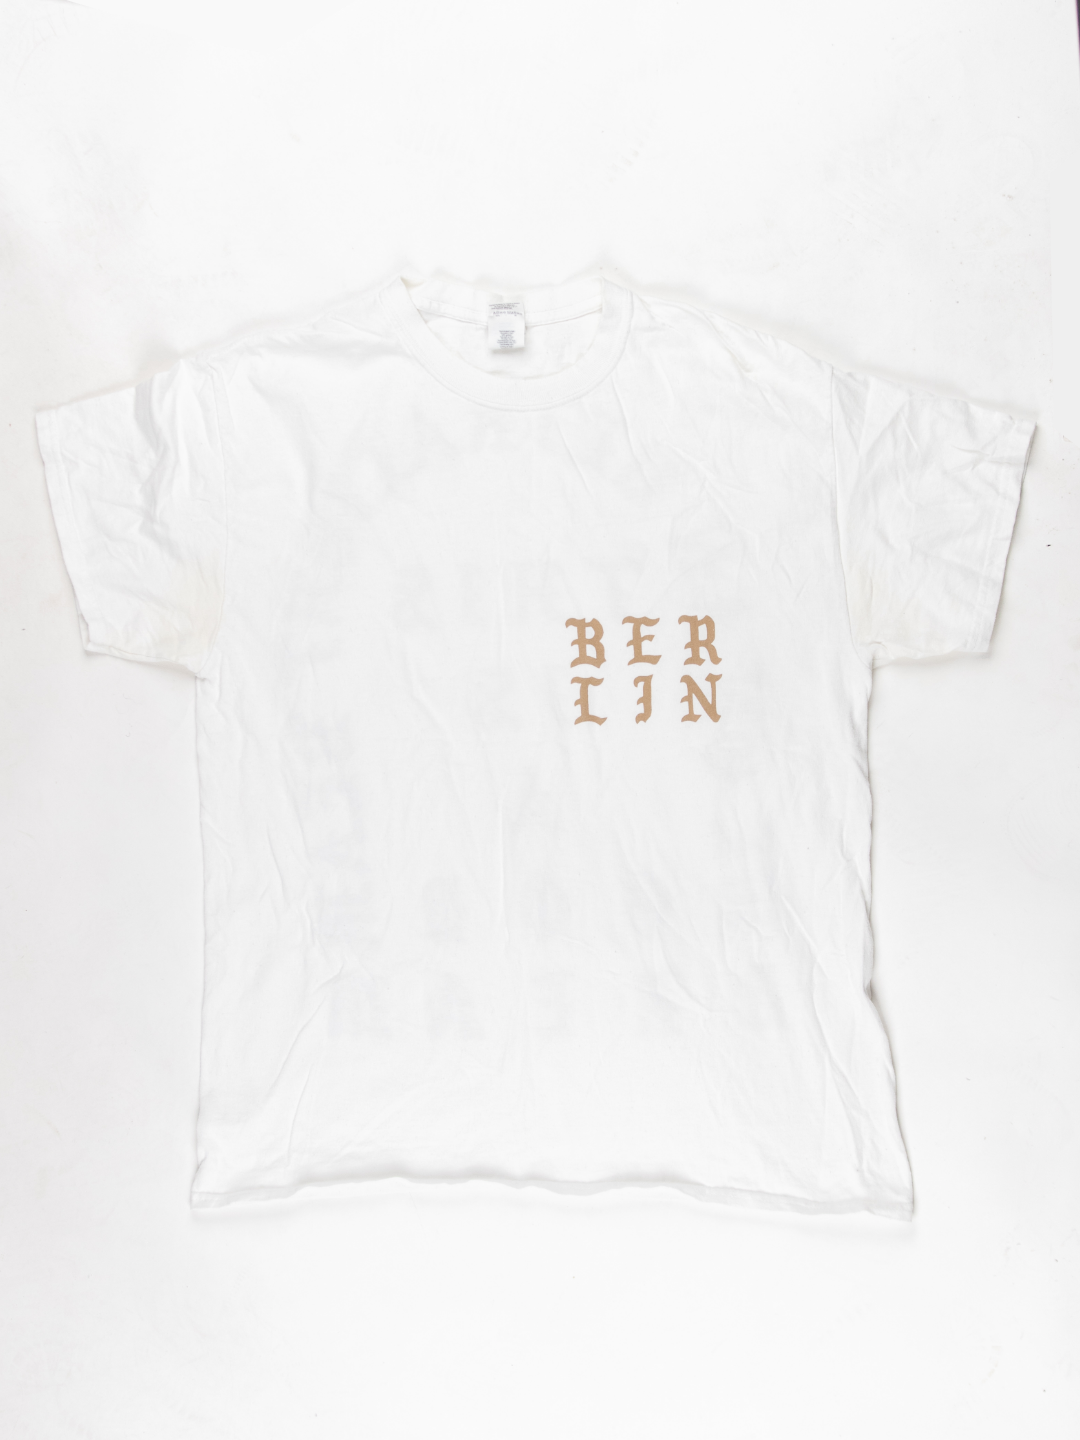 'Pablo' Berlin Merch T-shirt